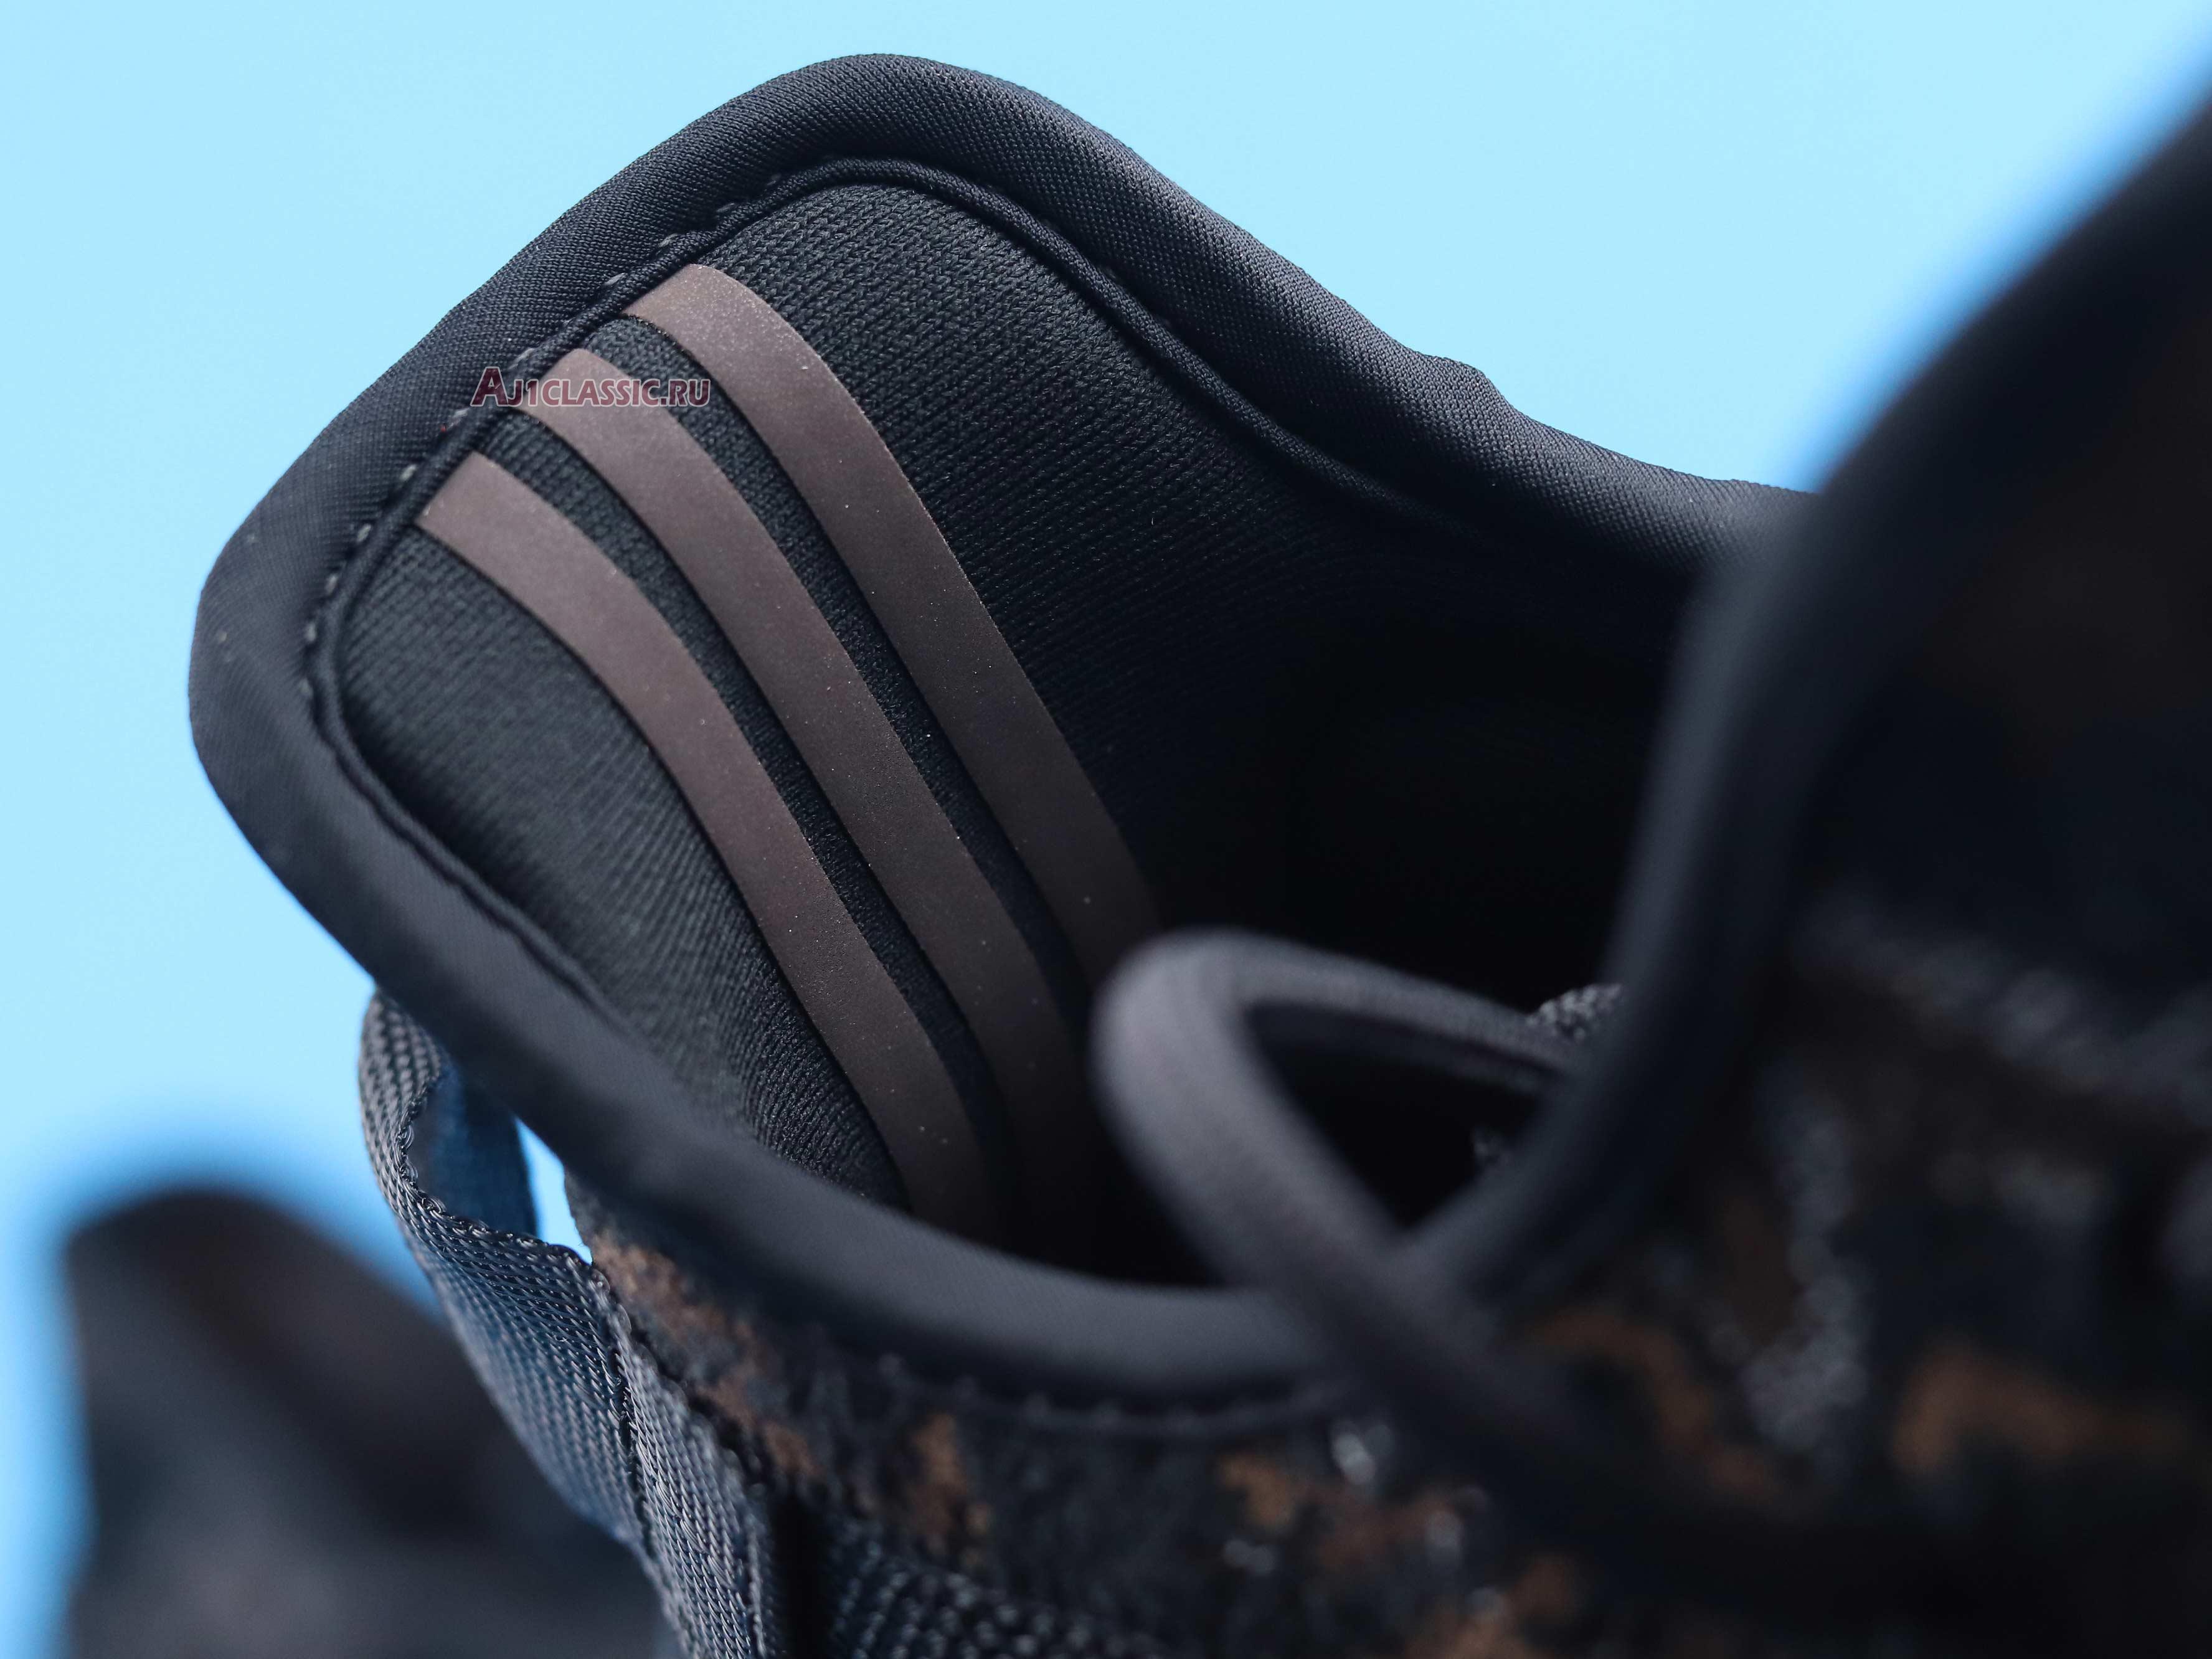 Adidas Yeezy Boost 350 V2 "MX Rock" GW3774